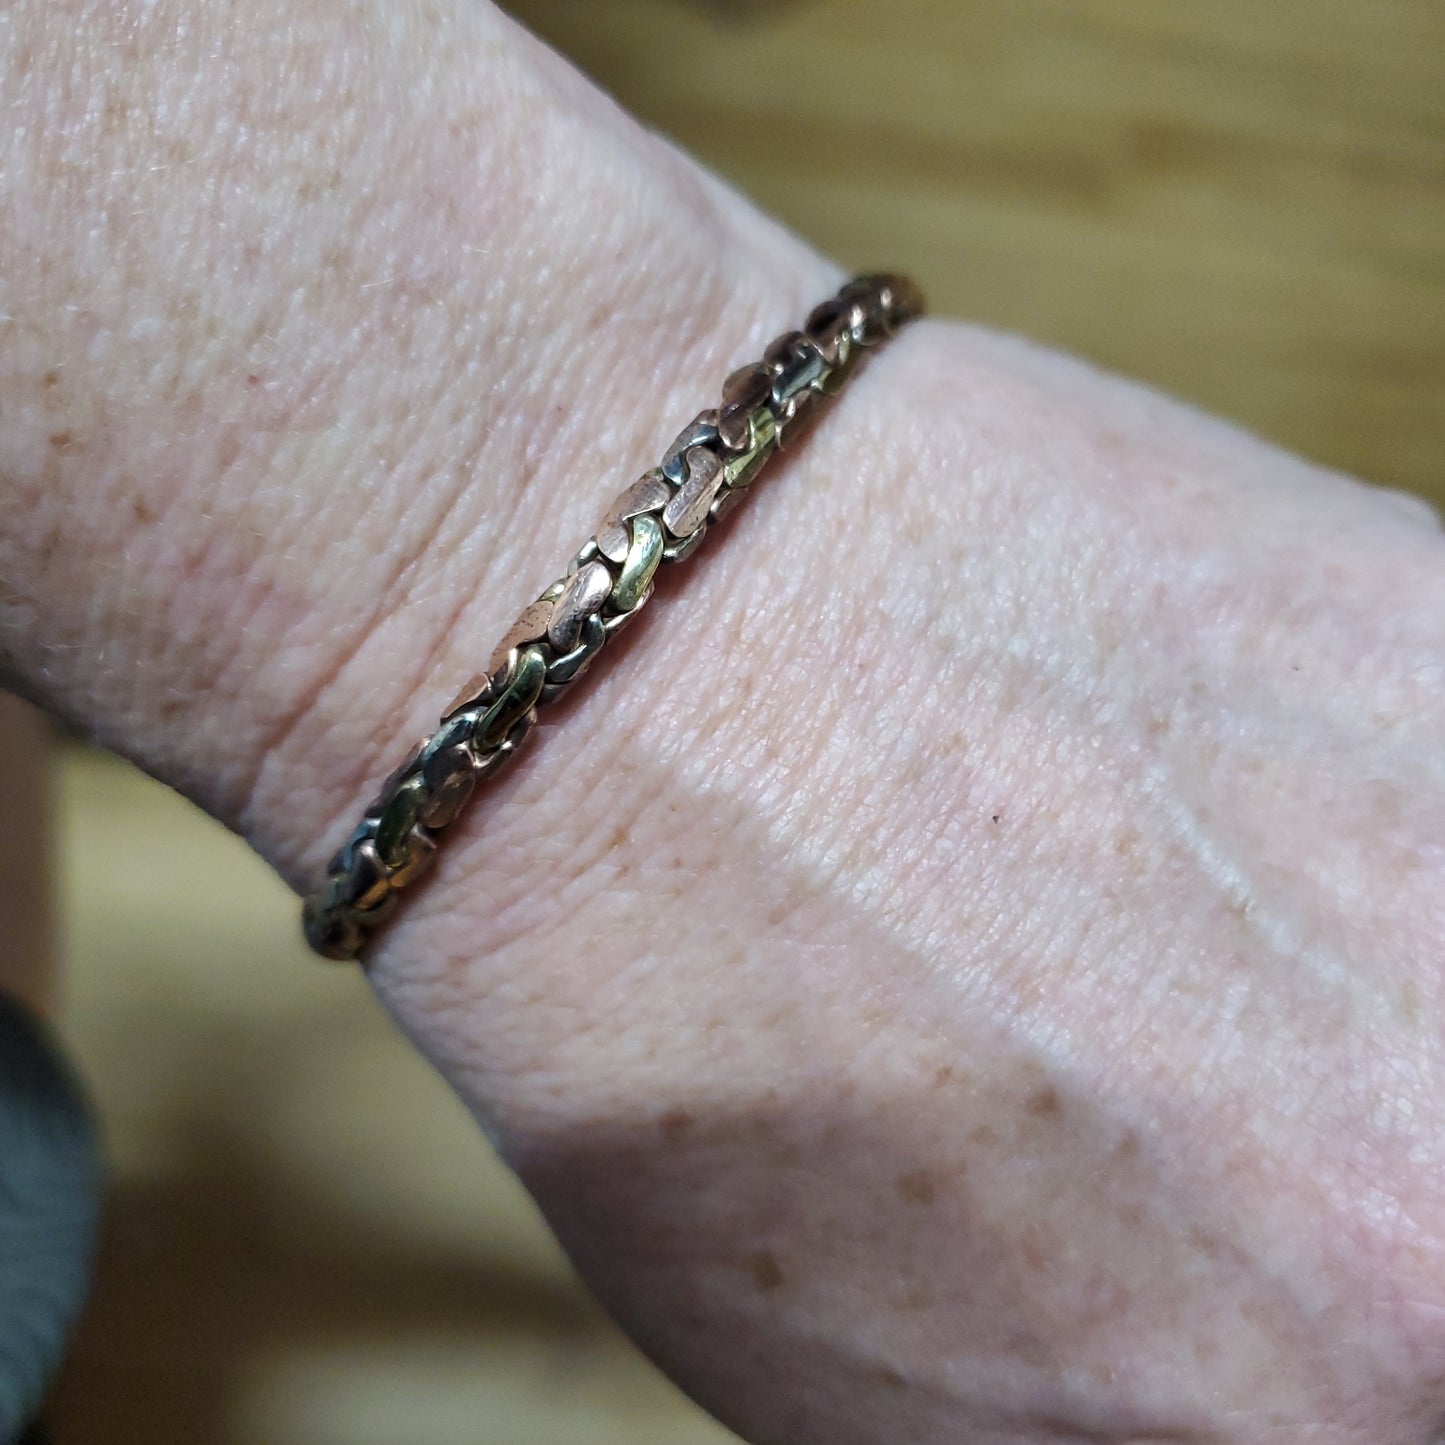 Copper Brass Braid Cuff Bracelet 1/8th "